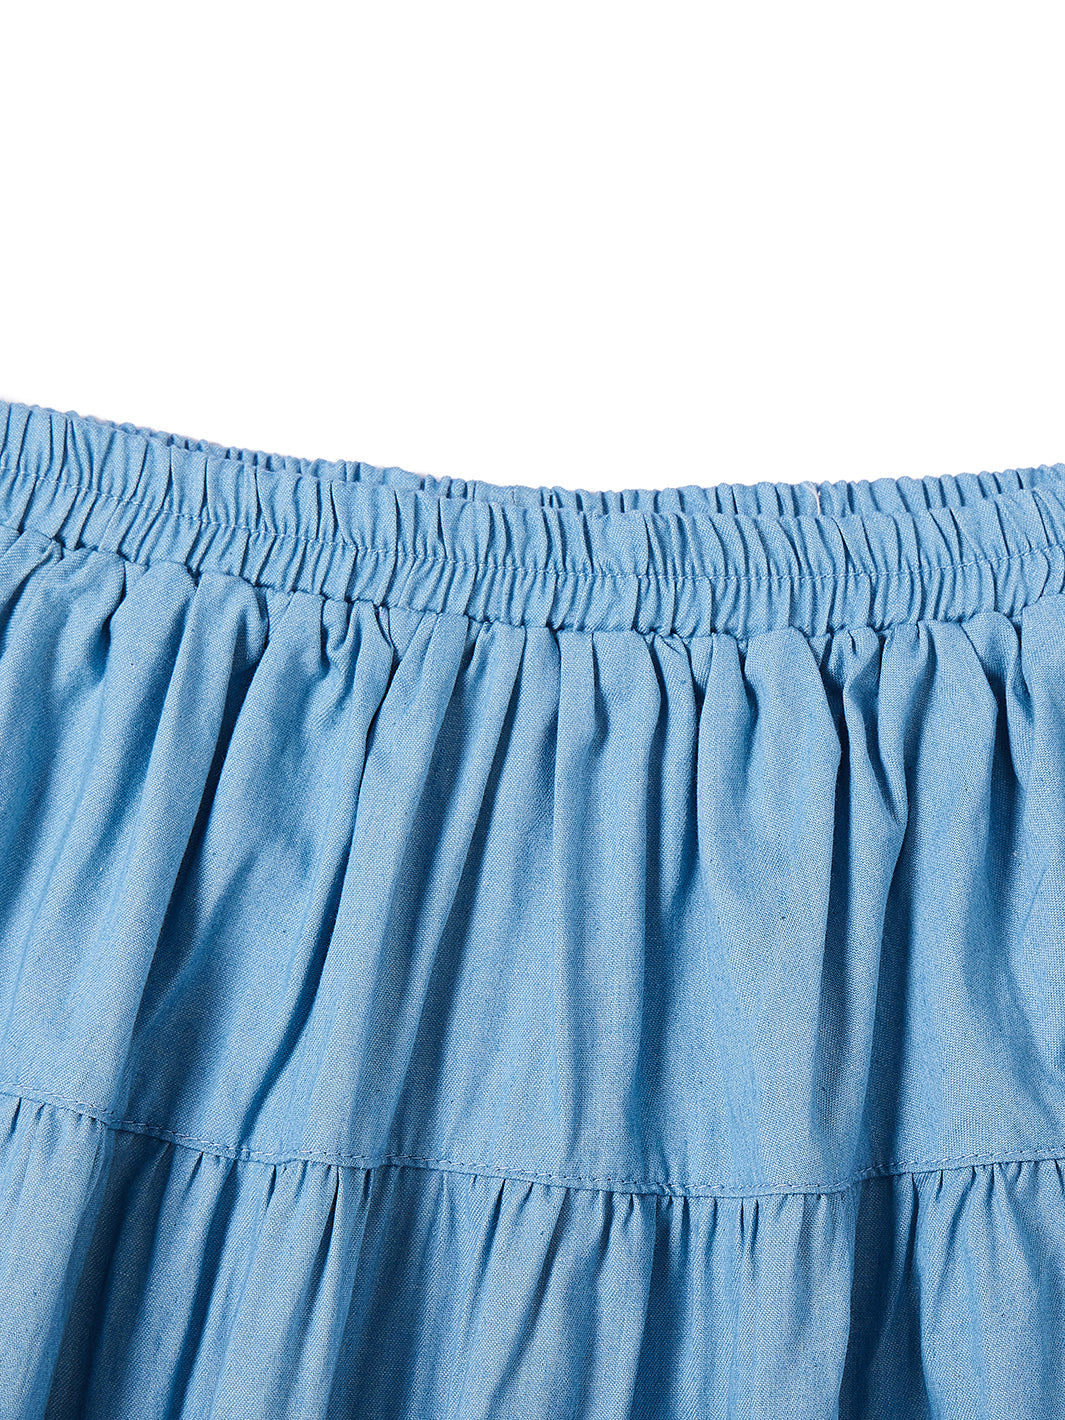 Tiered Skirt - Lt. Blue